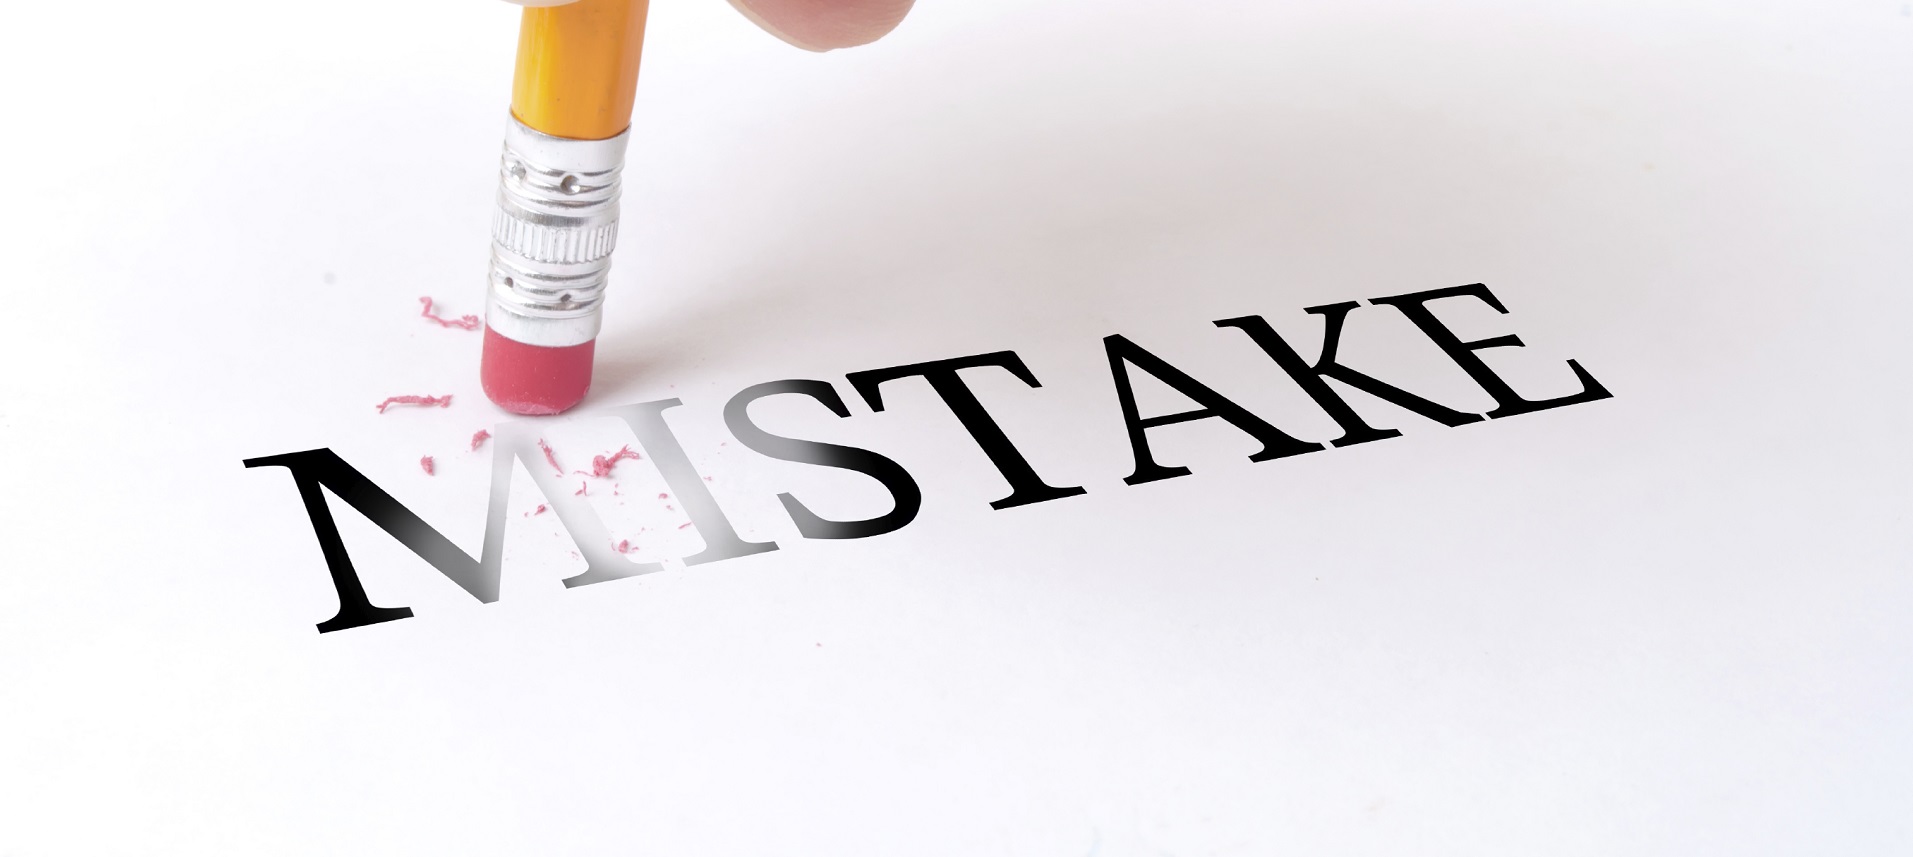 10 sai lầm khiến bạn khởi nghiệp kinh doanh thất bại (P1)